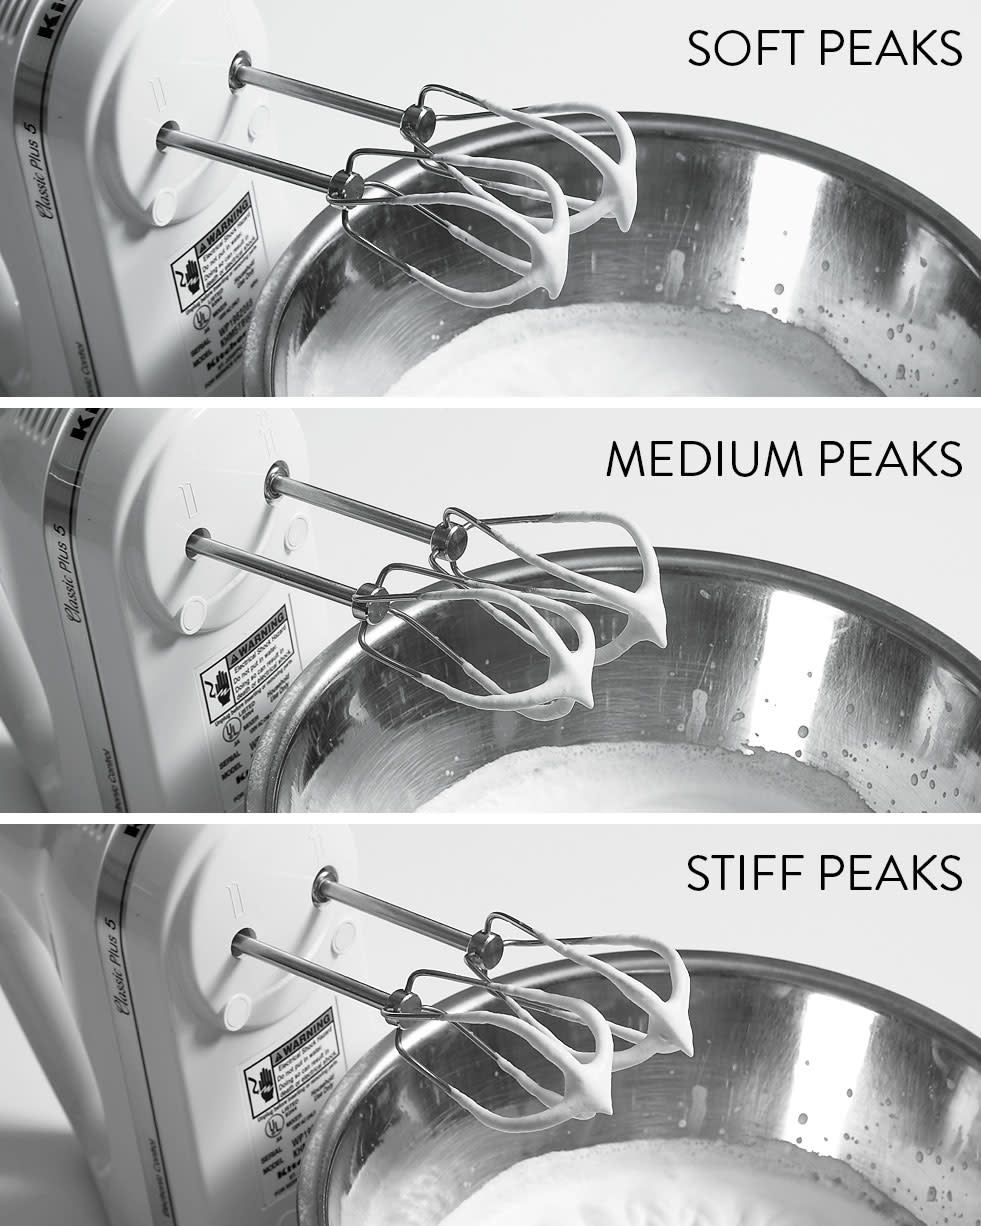 Whipped Cream: Soft Peaks vs Medium Peaks vs Stiff Peaks